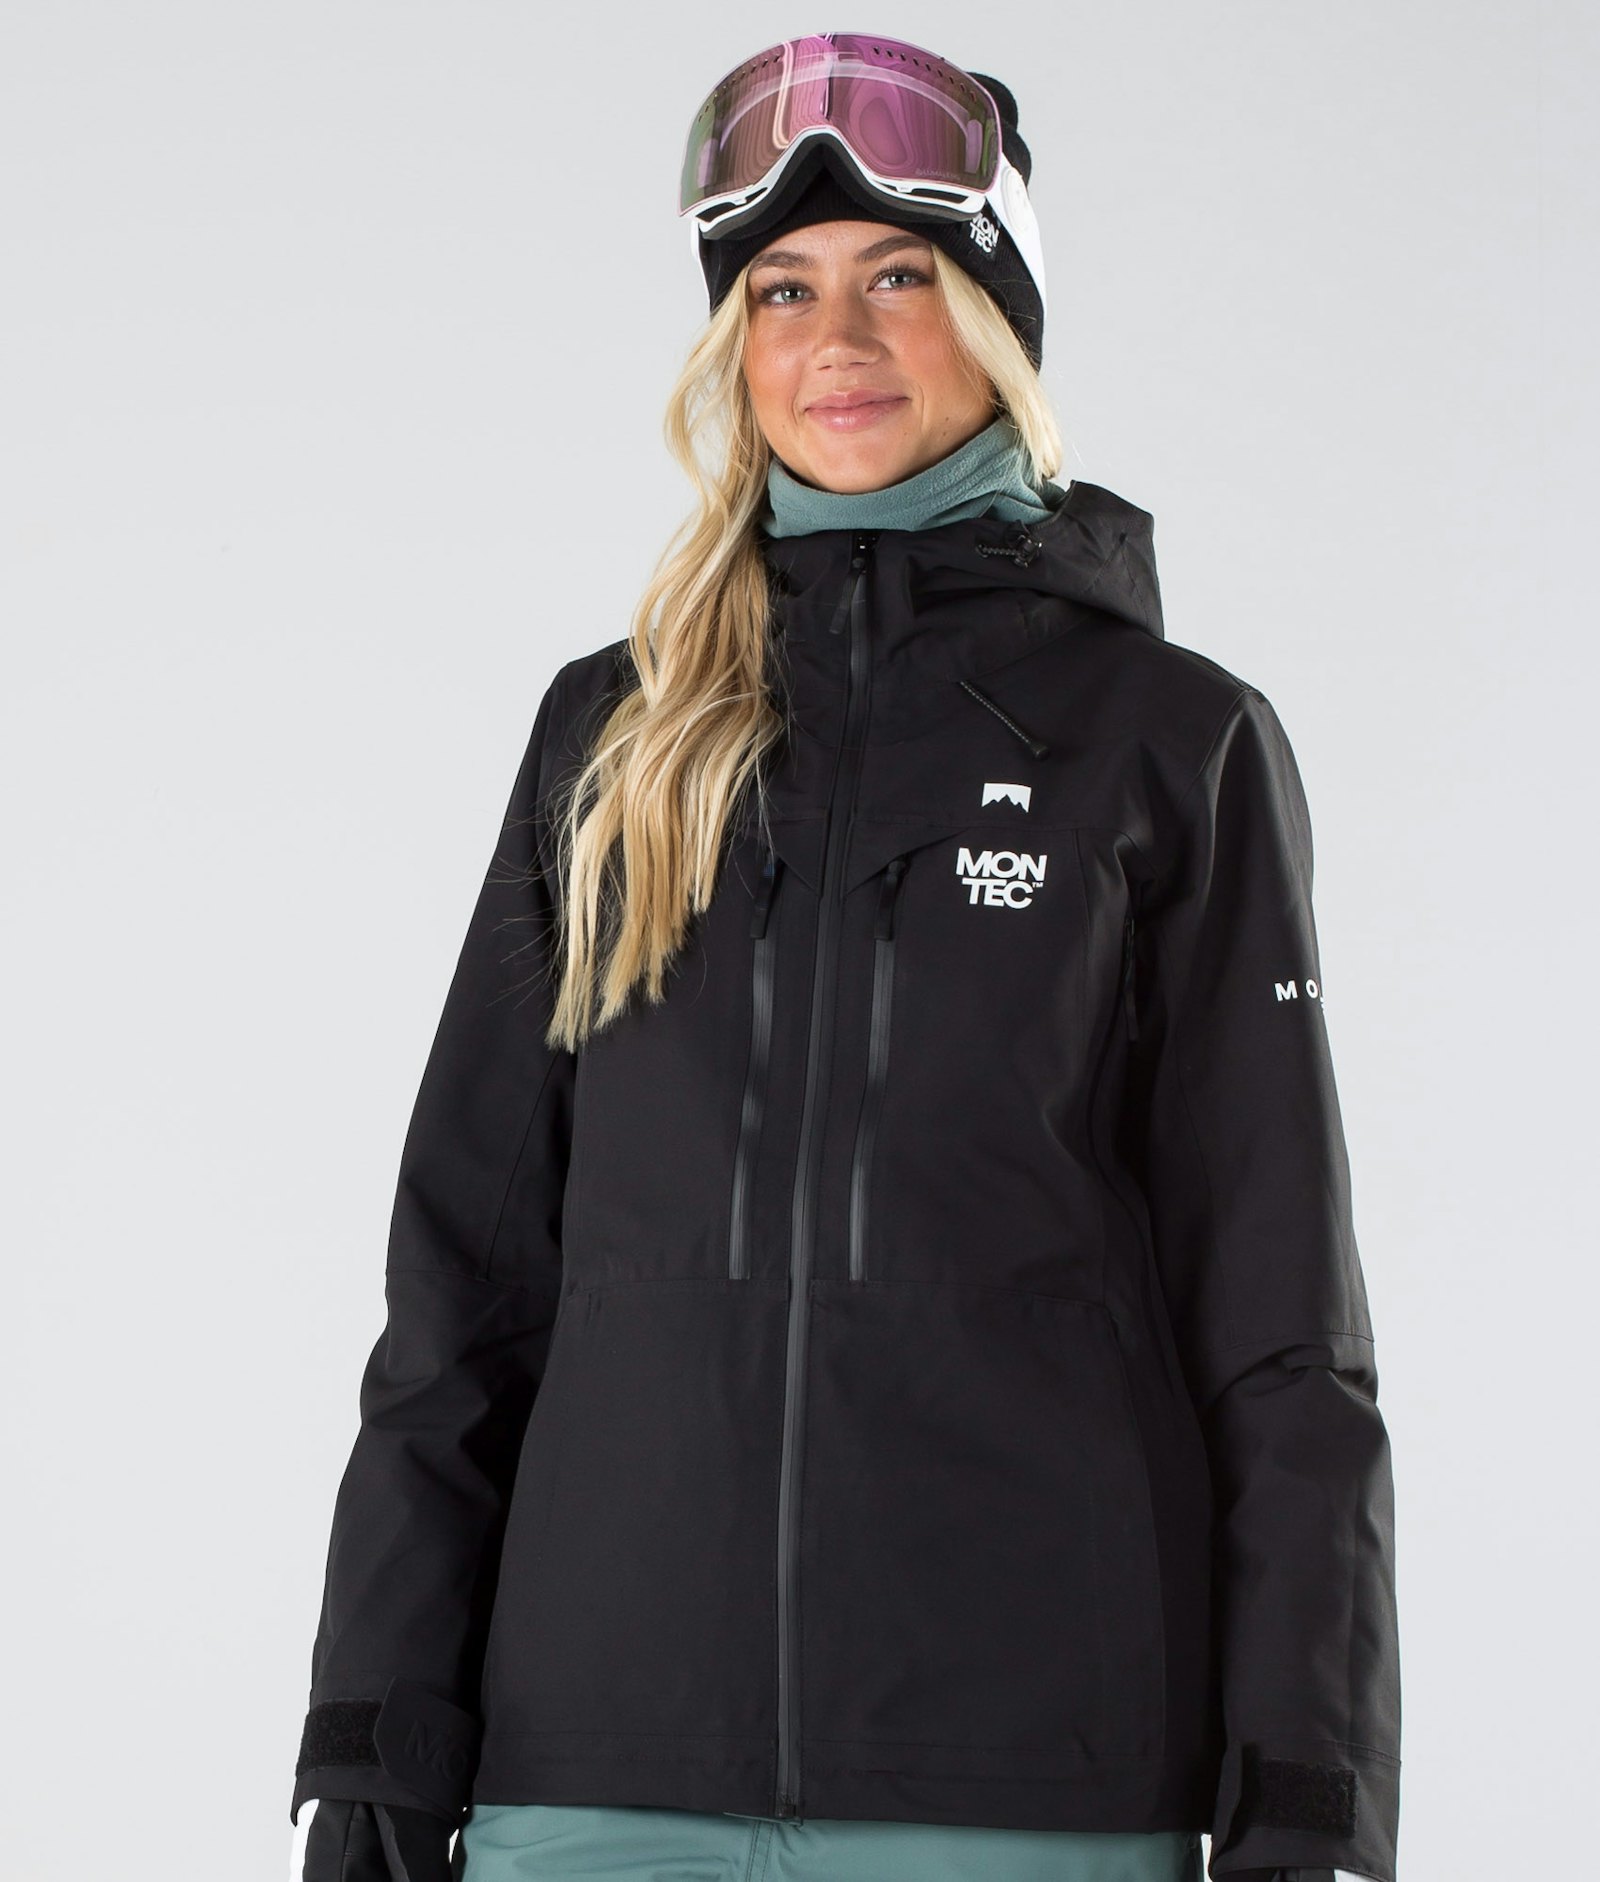 Moss W 2019 Snowboardjakke Dame Black